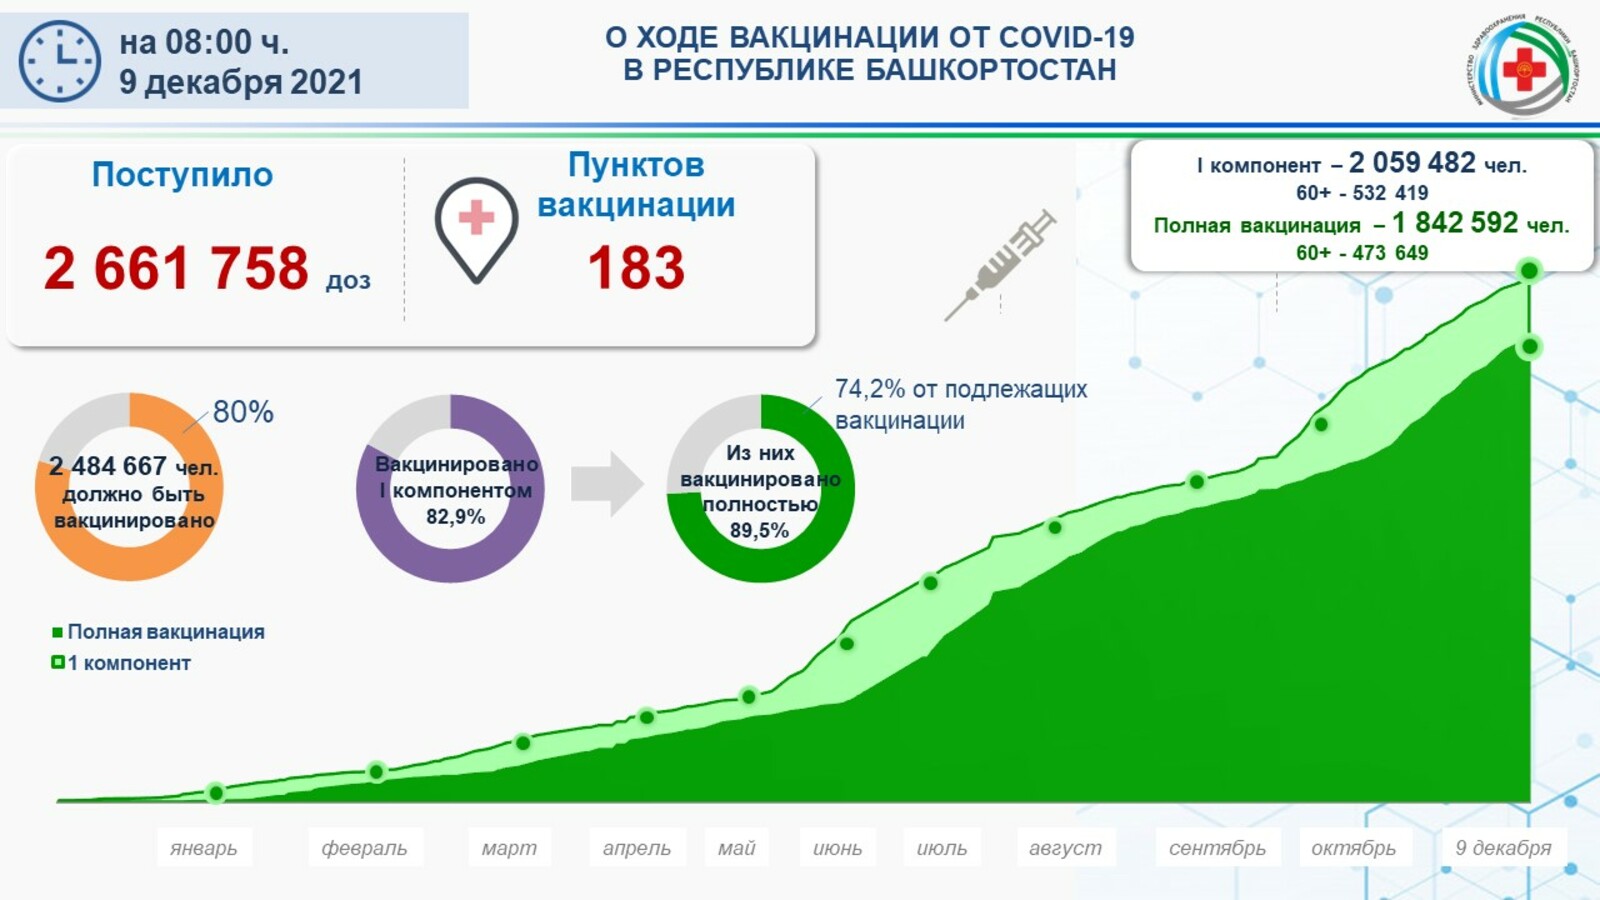 В восьми районах Башкирии вакцинацию от коронавируса прошли более 100% жителей